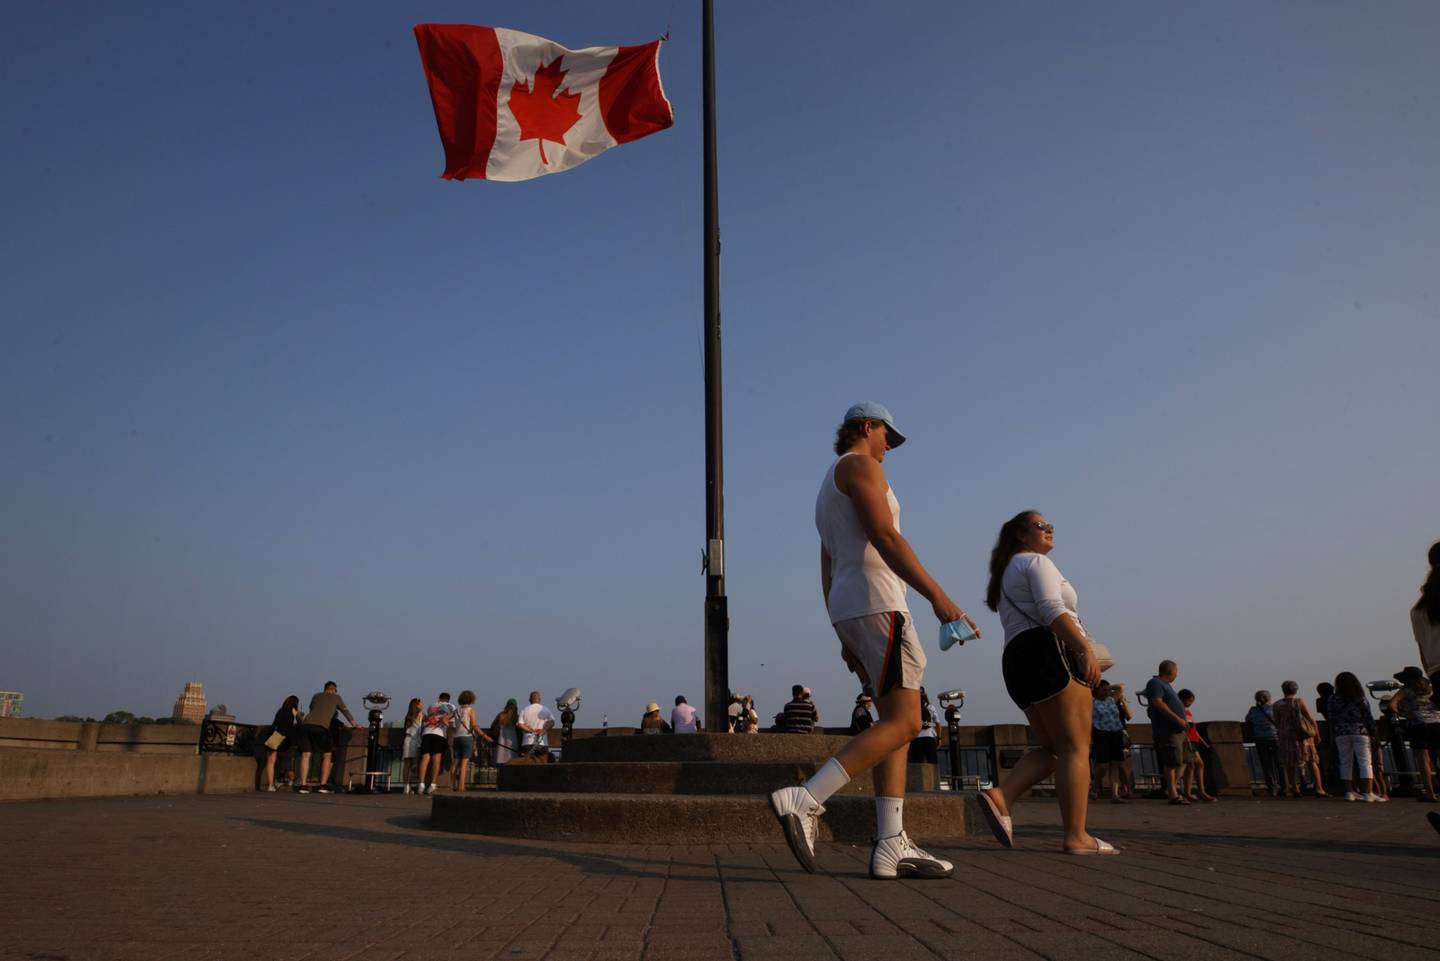 Una bandera de Canadá ondea mientras los turistas visitan las cataratas del Niágara, Ontario, Canadá, el lunes 9 de agosto de 2021.dfd